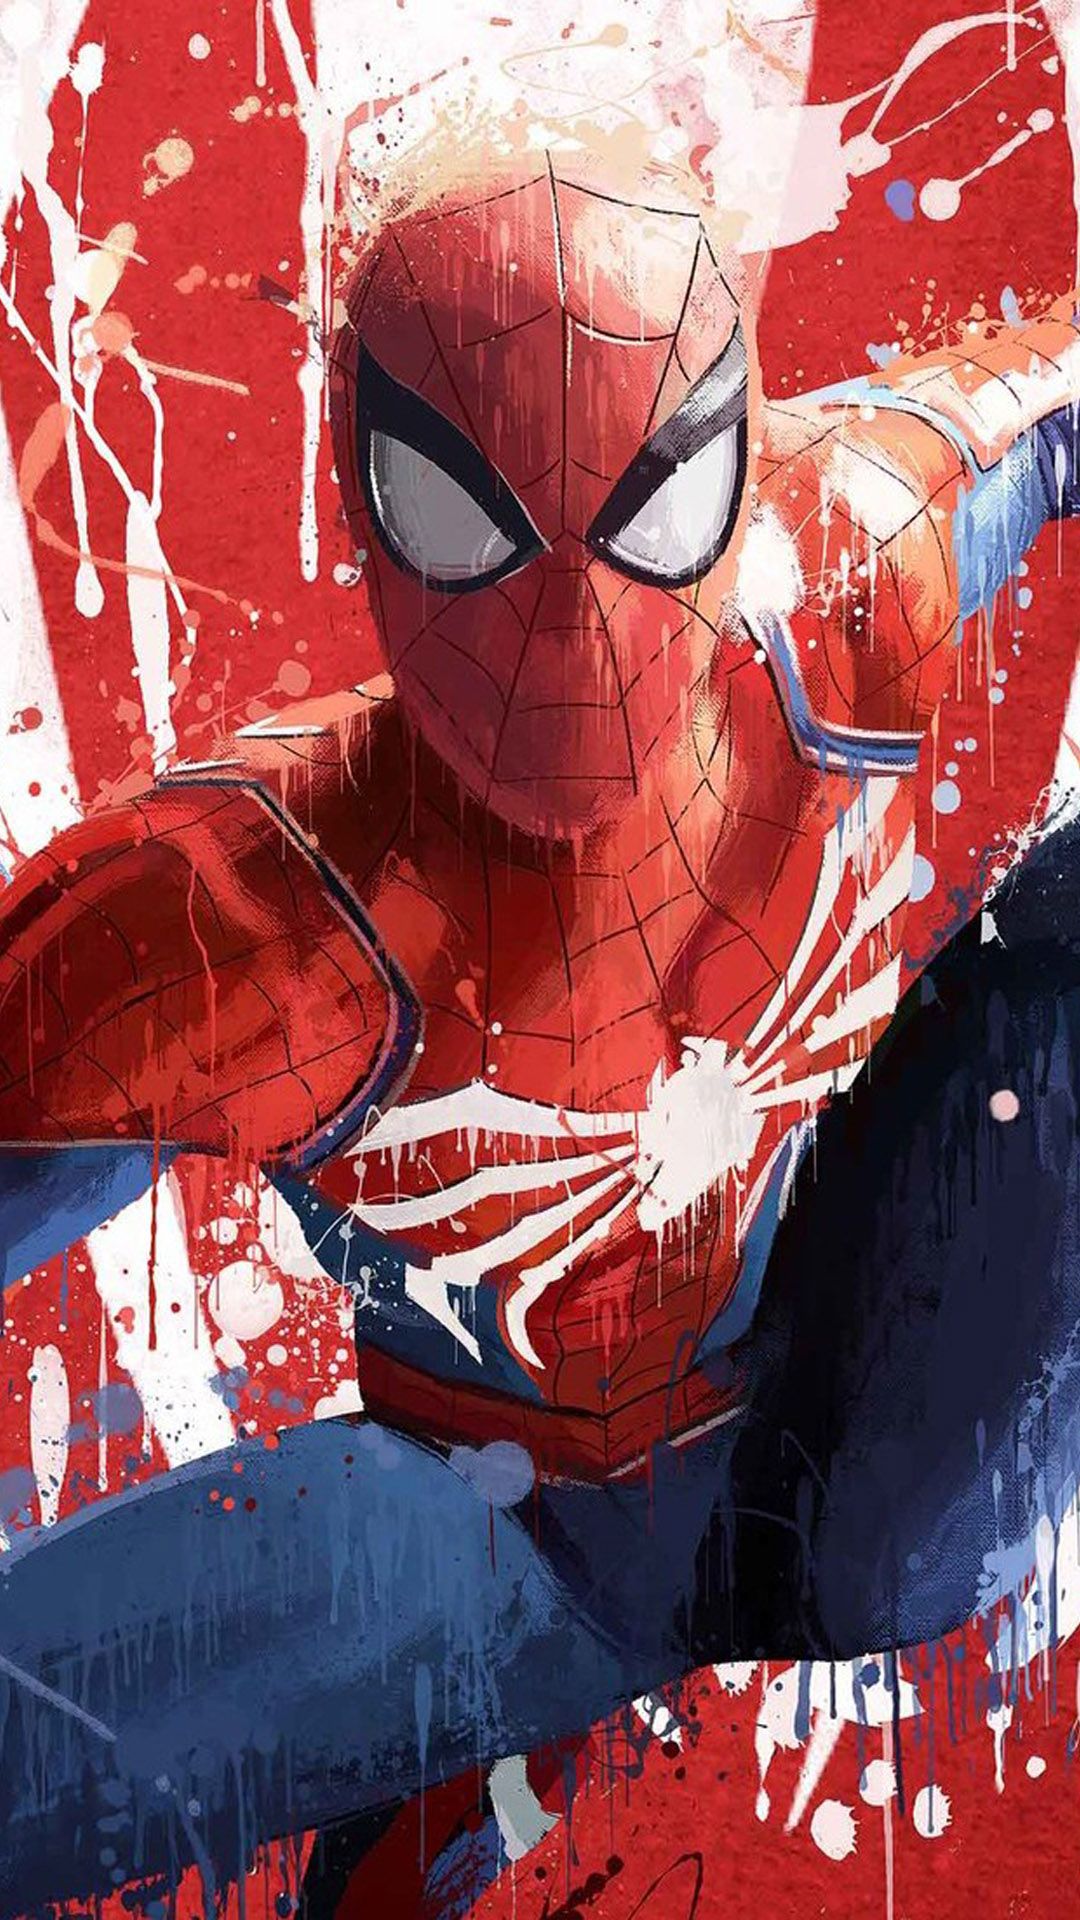 Spider Man Fan Art Wallpapers